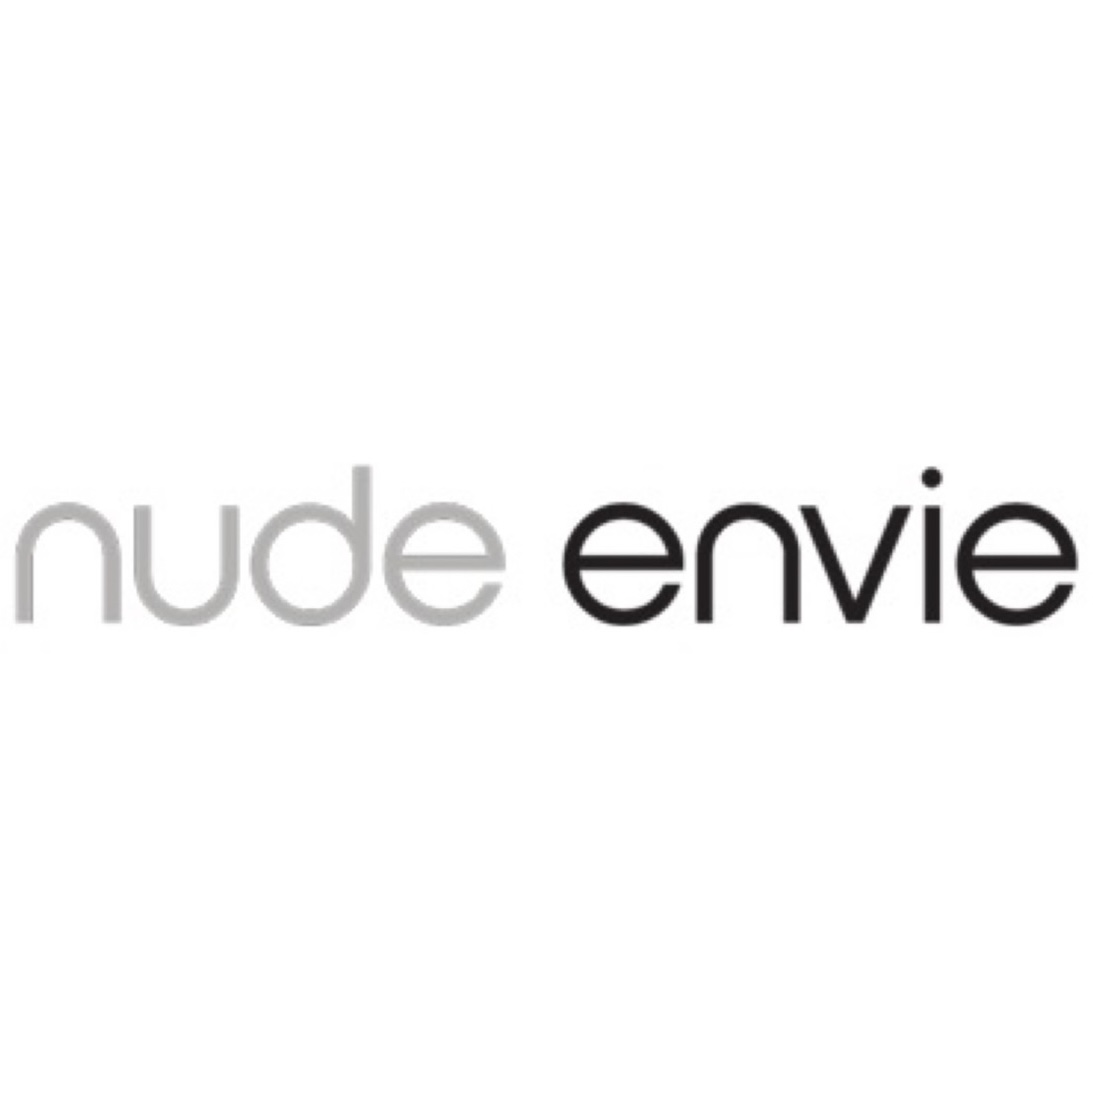 Nude Envie Logo